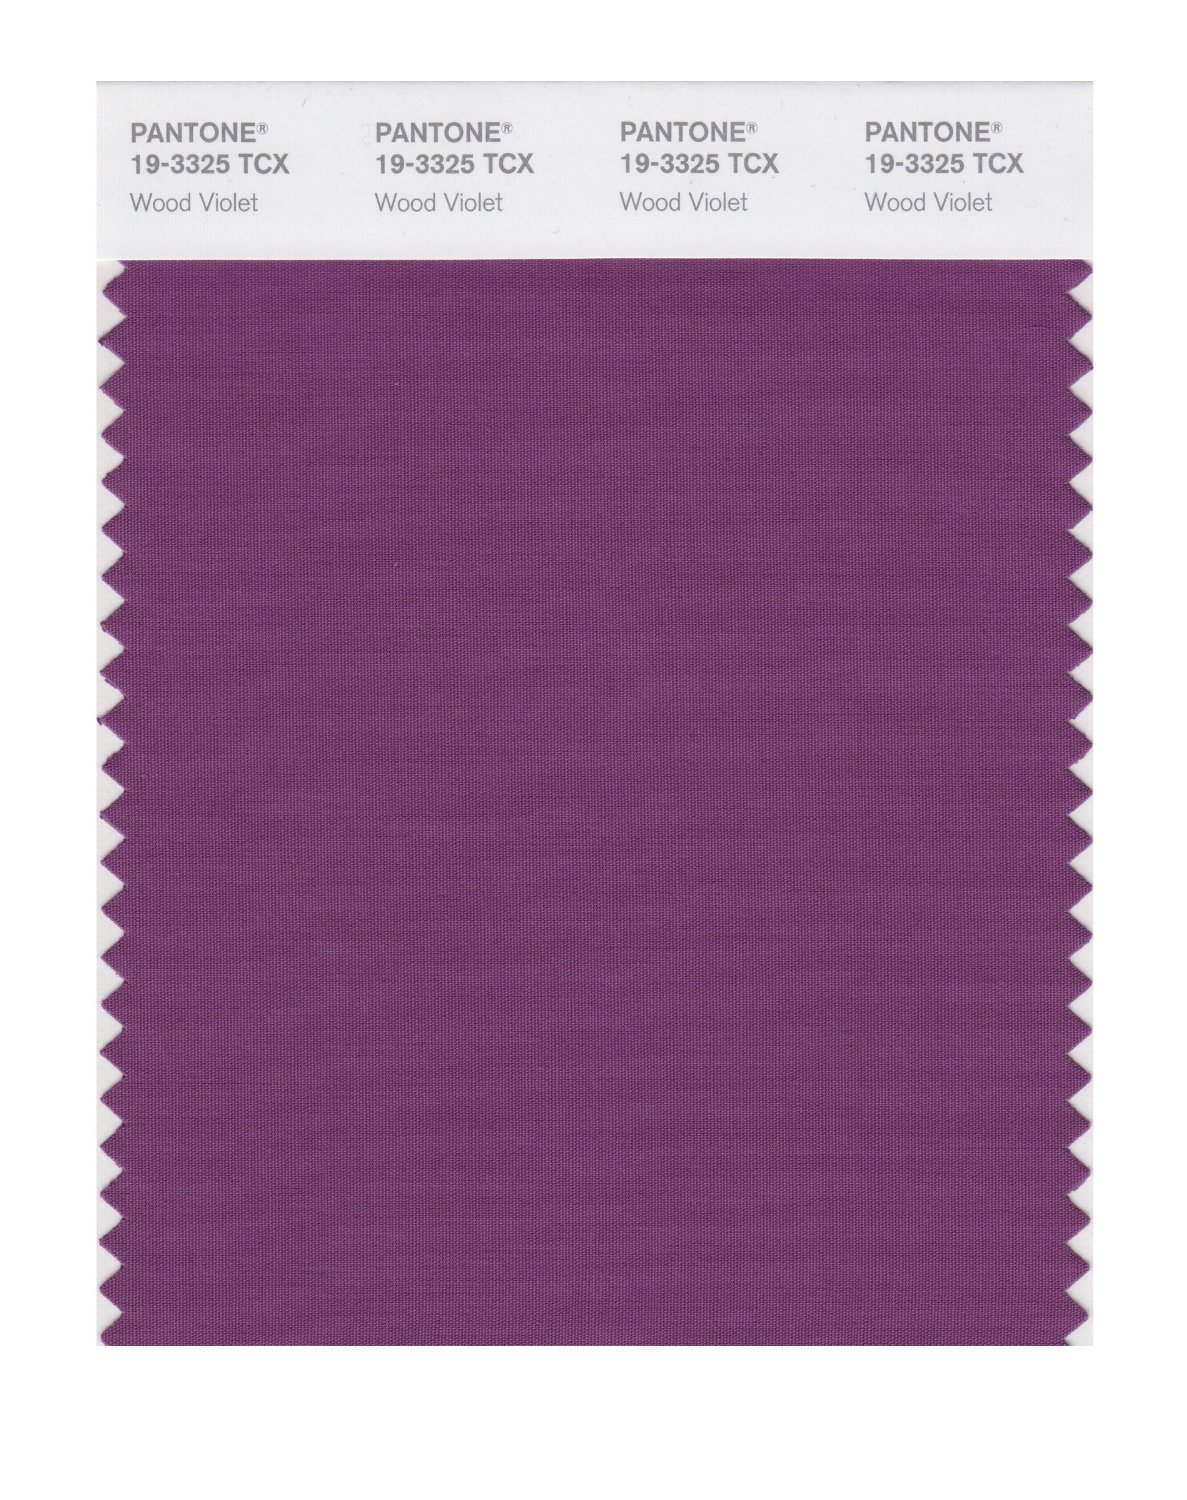 Pantone Cotton Swatch 19-3325 Wood Violet